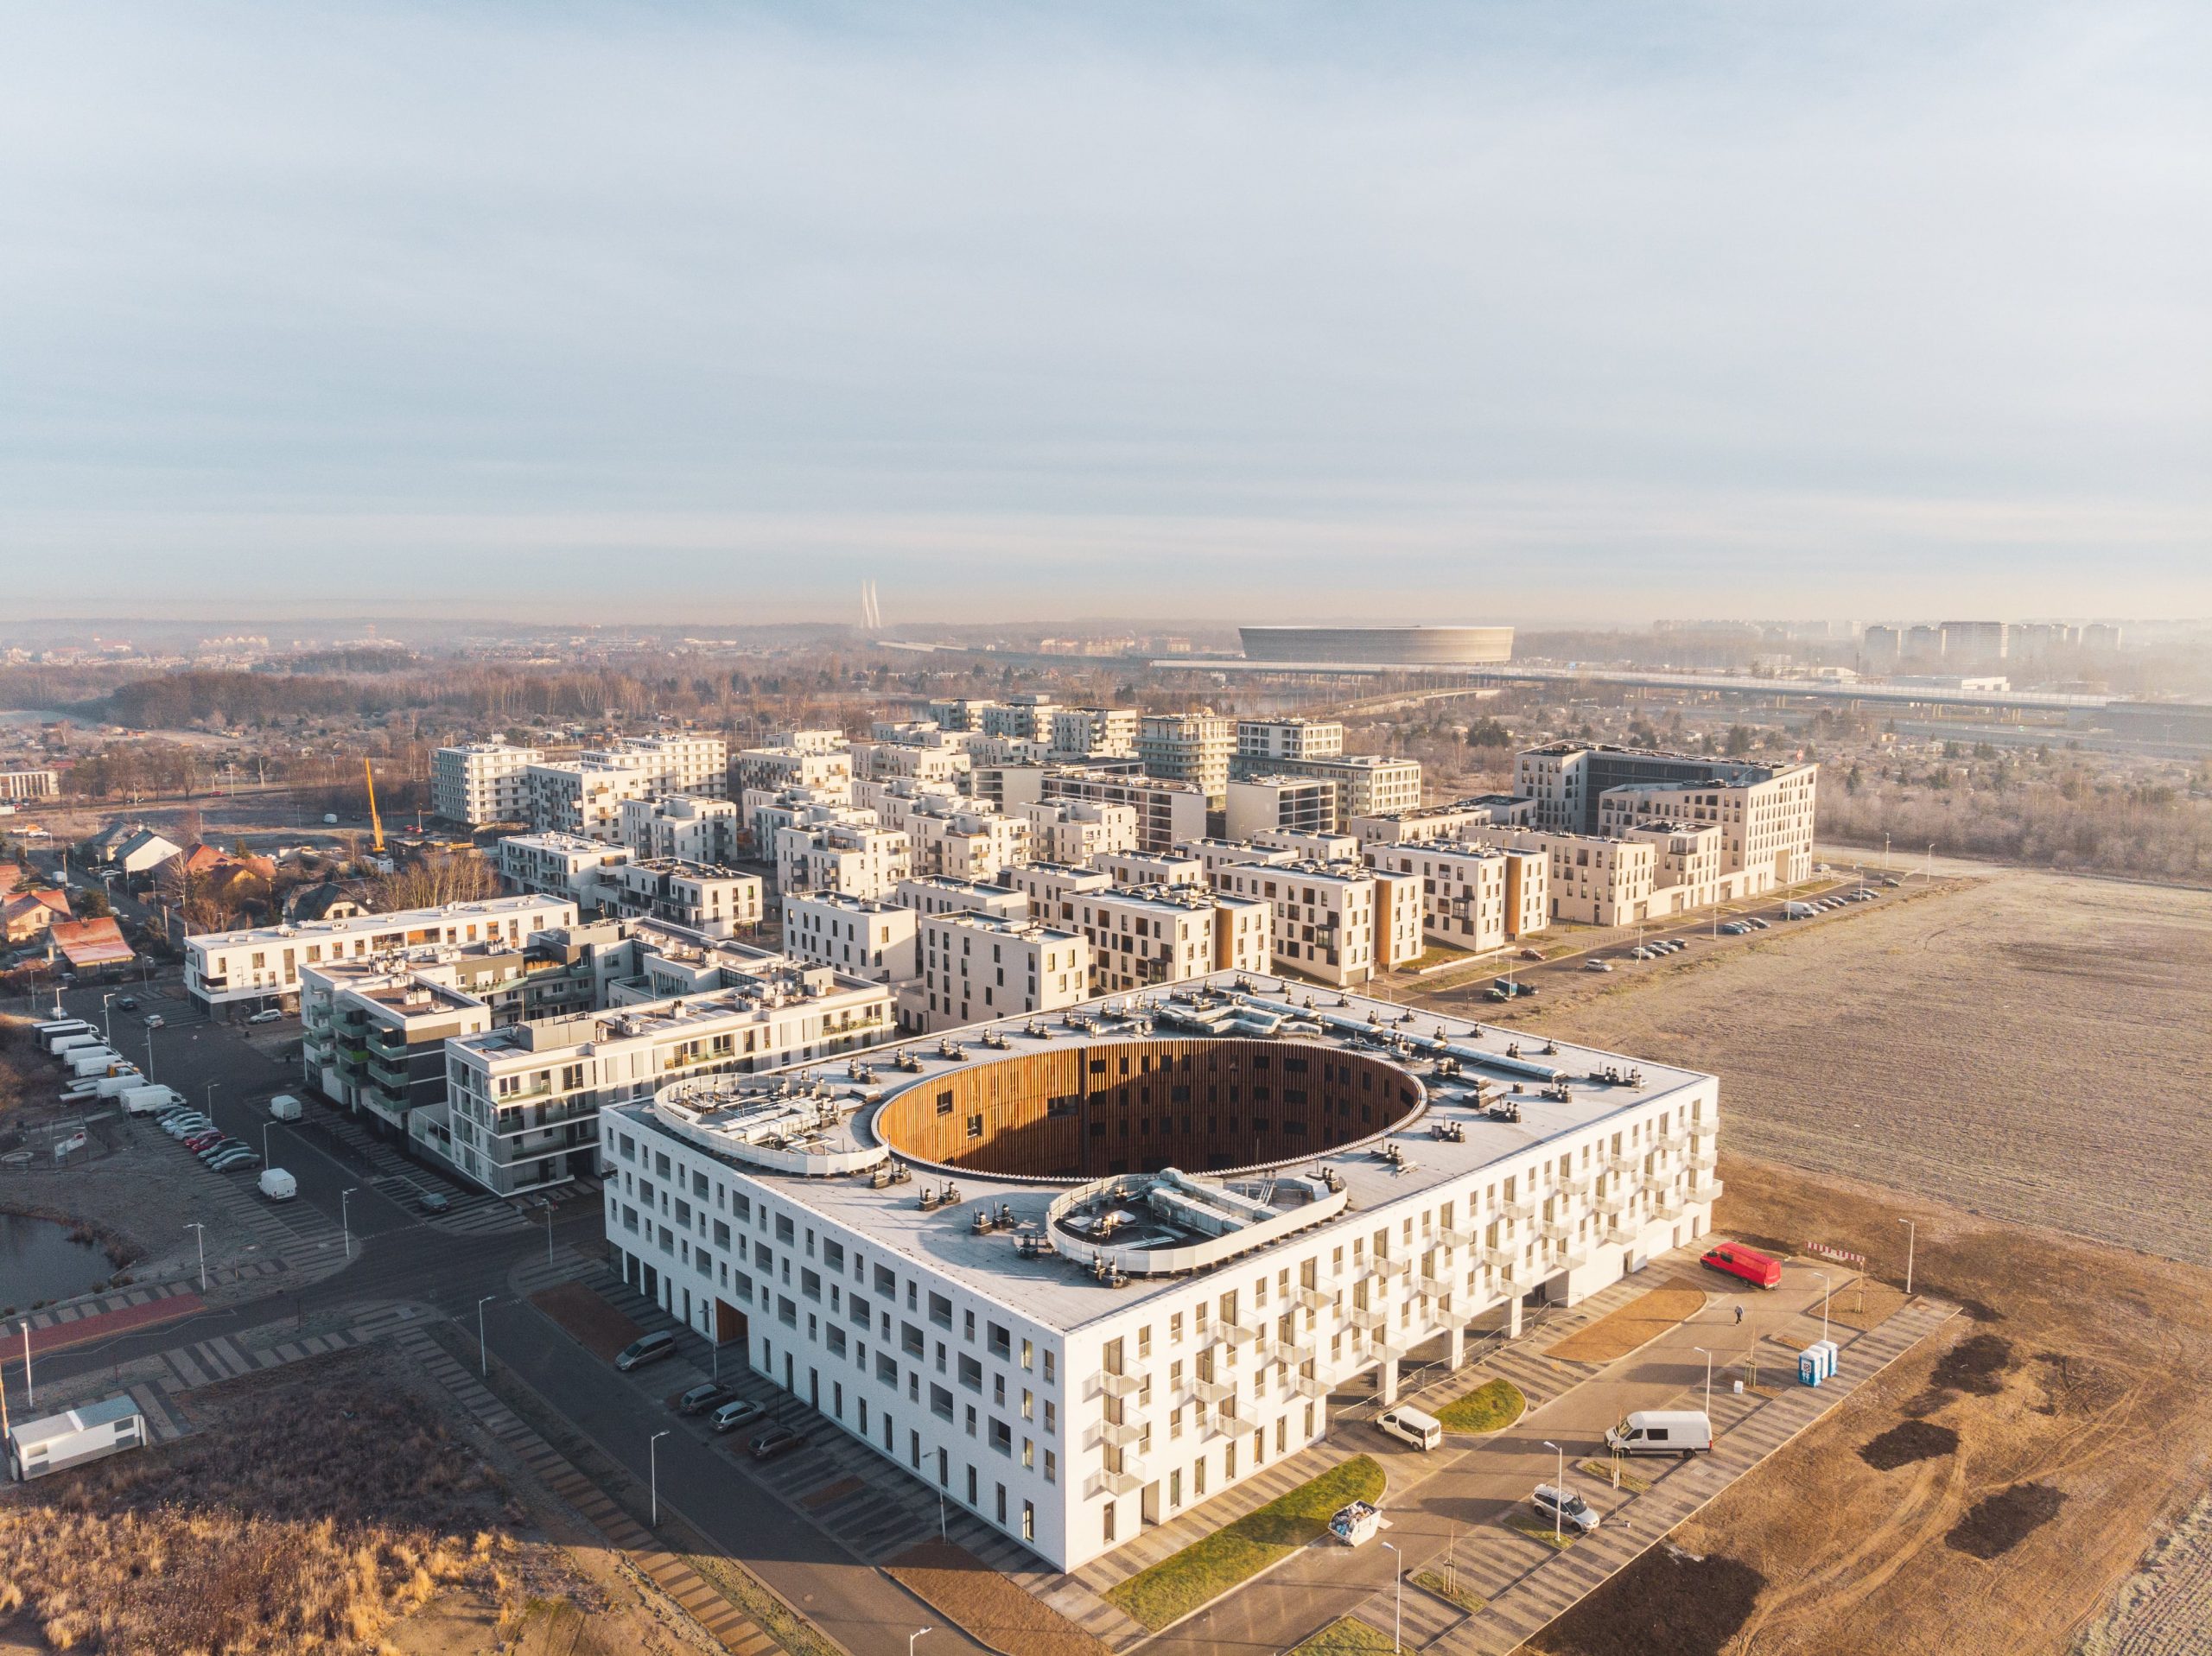 Sídliště Nowe Żerniki z letecké perspektivy. Výsledek desetileté práce více než čtyřiceti architektů a mnoha workshopů s obyvateli.